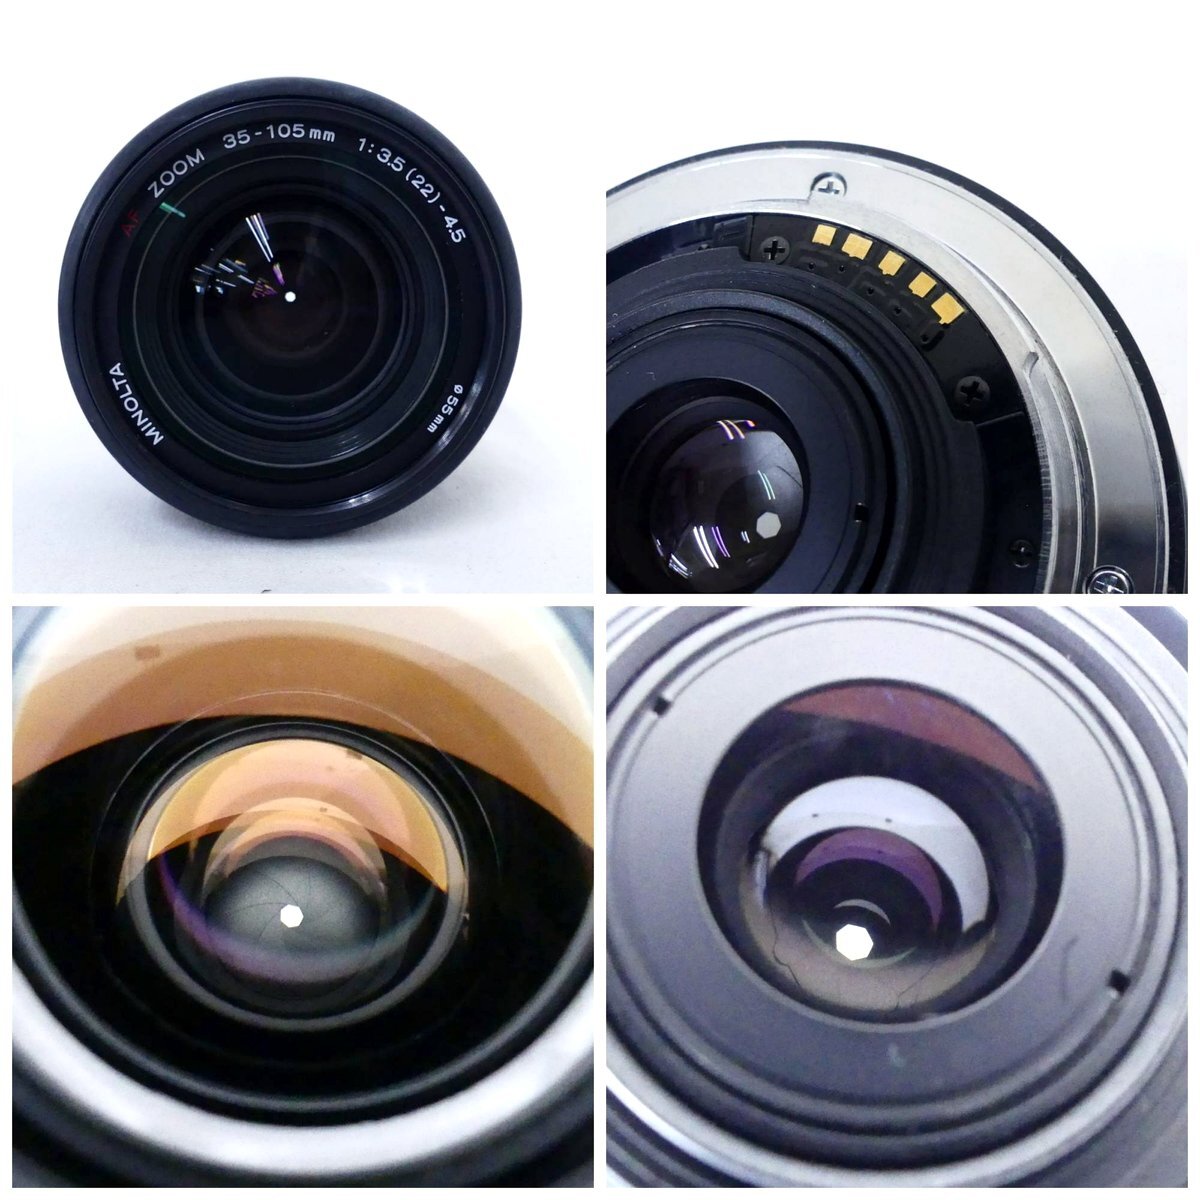 MINOLTA ミノルタ α 8700i + AF ZOOM 35-105mm F3.5-4.5 フィルムカメラ、3500xi ストロボ 現状品 USED /2405Cの画像8